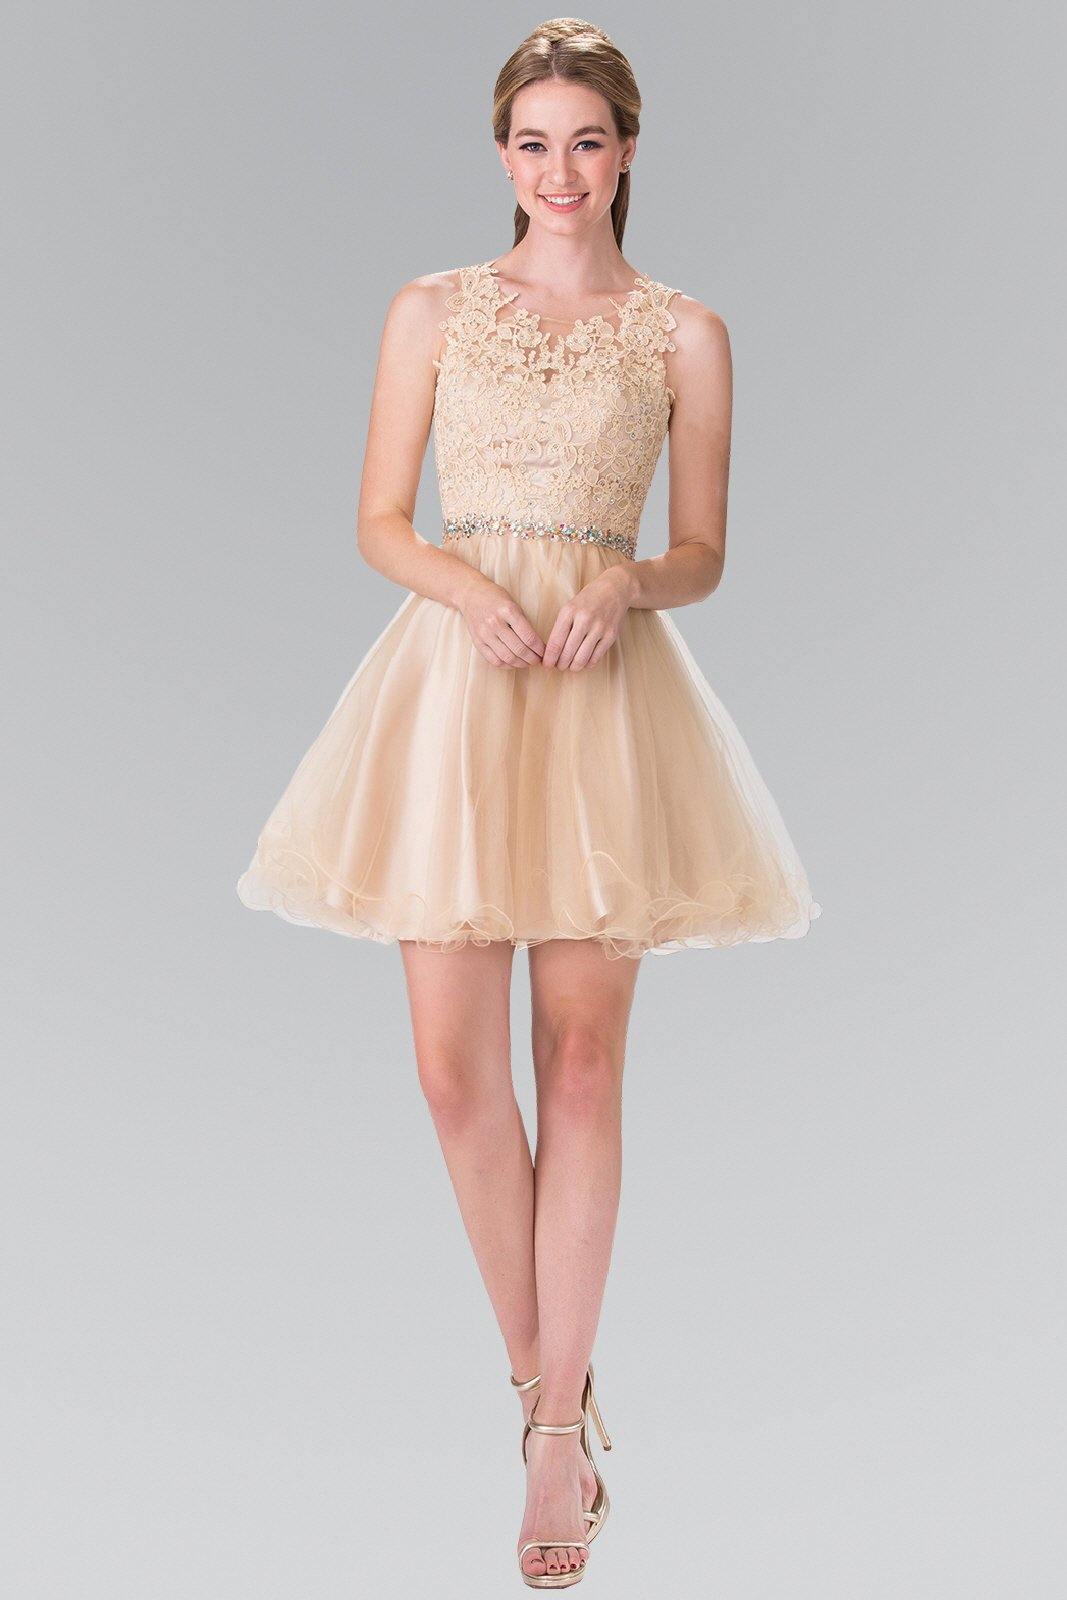 Lace Illusion Top A-line Short Dress Cocktail - The Dress Outlet Elizabeth K